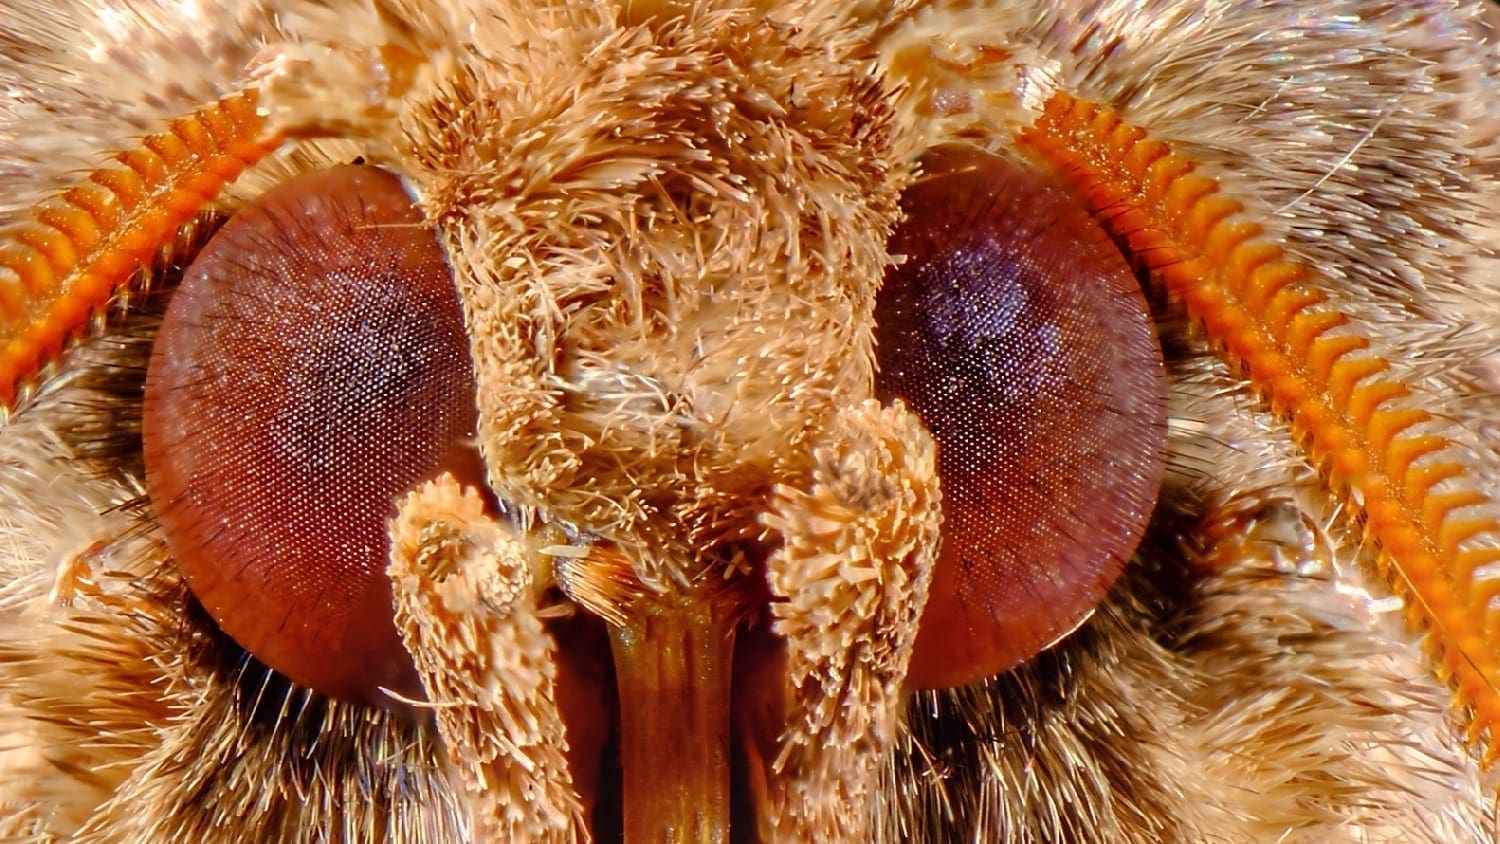 Metarranthis Moth head with eyes: ID 130652276 © Ezumeimages | Dreamstime.com